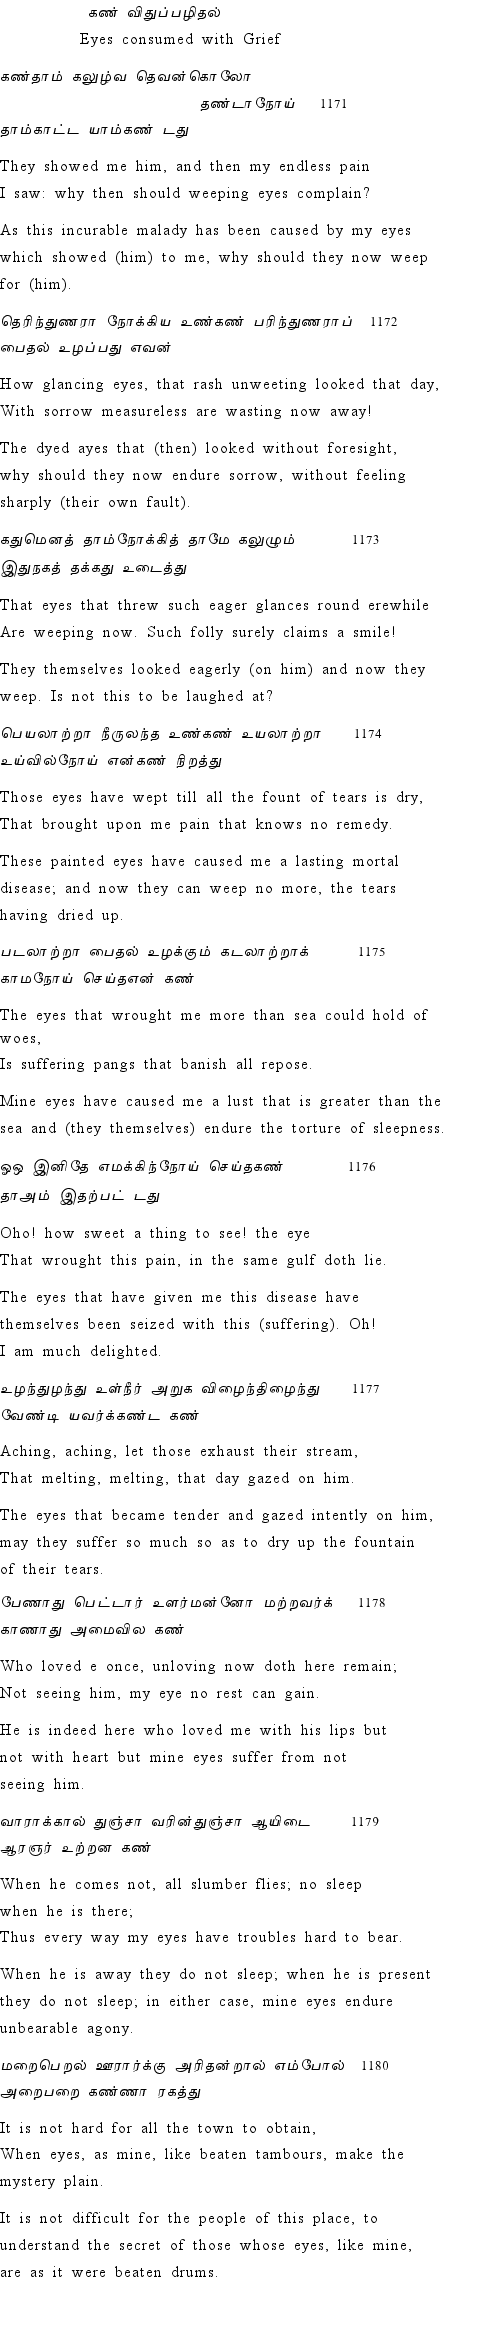 Text of Adhikaram 118